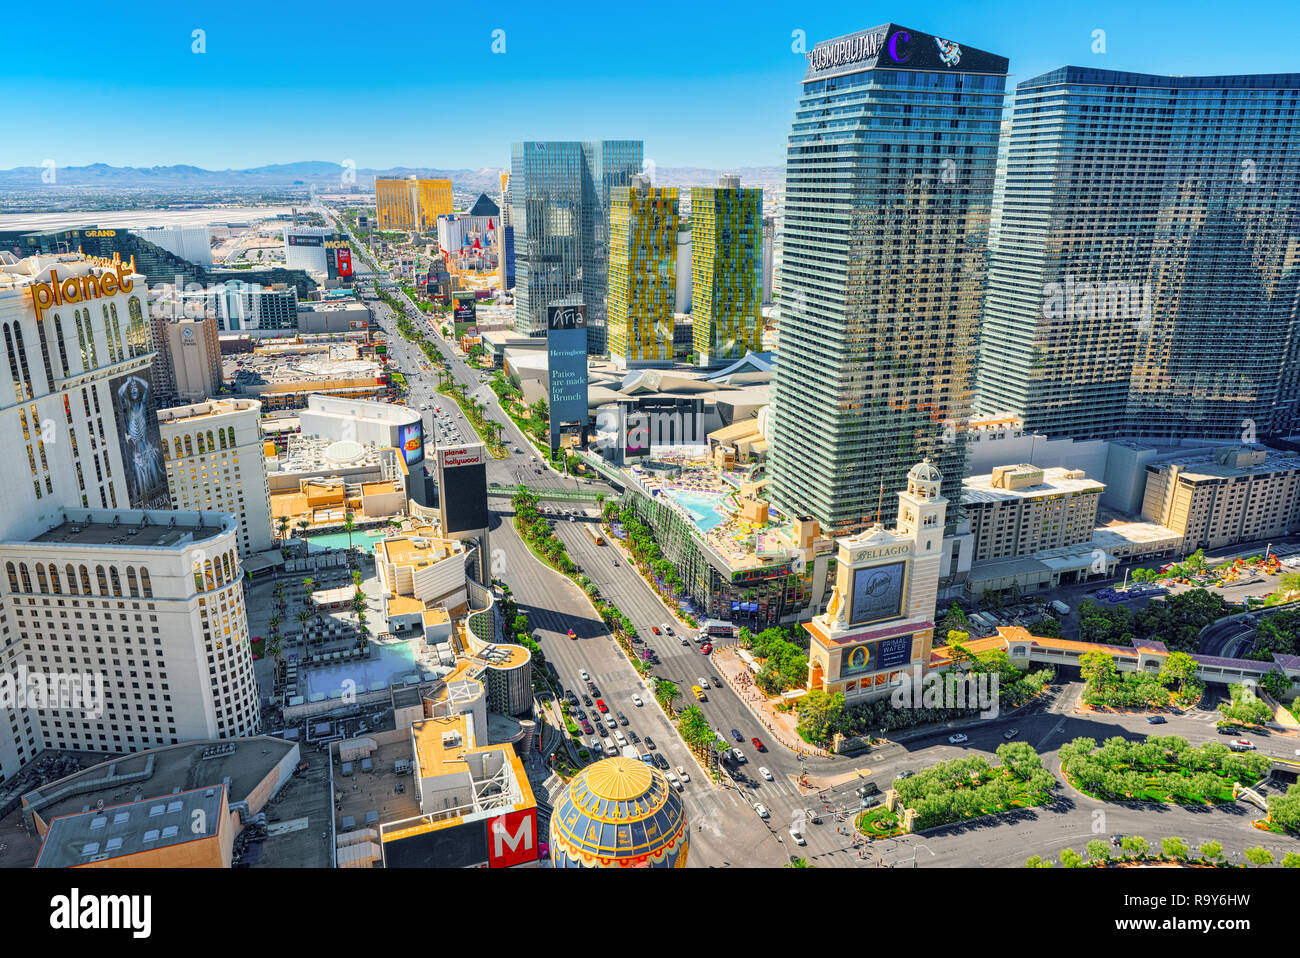 Las Vegas, Nevada, USA - 17. September 2018: die Hauptstraße von Las Vegas  Strip. Blick von oben Stockfotografie - Alamy